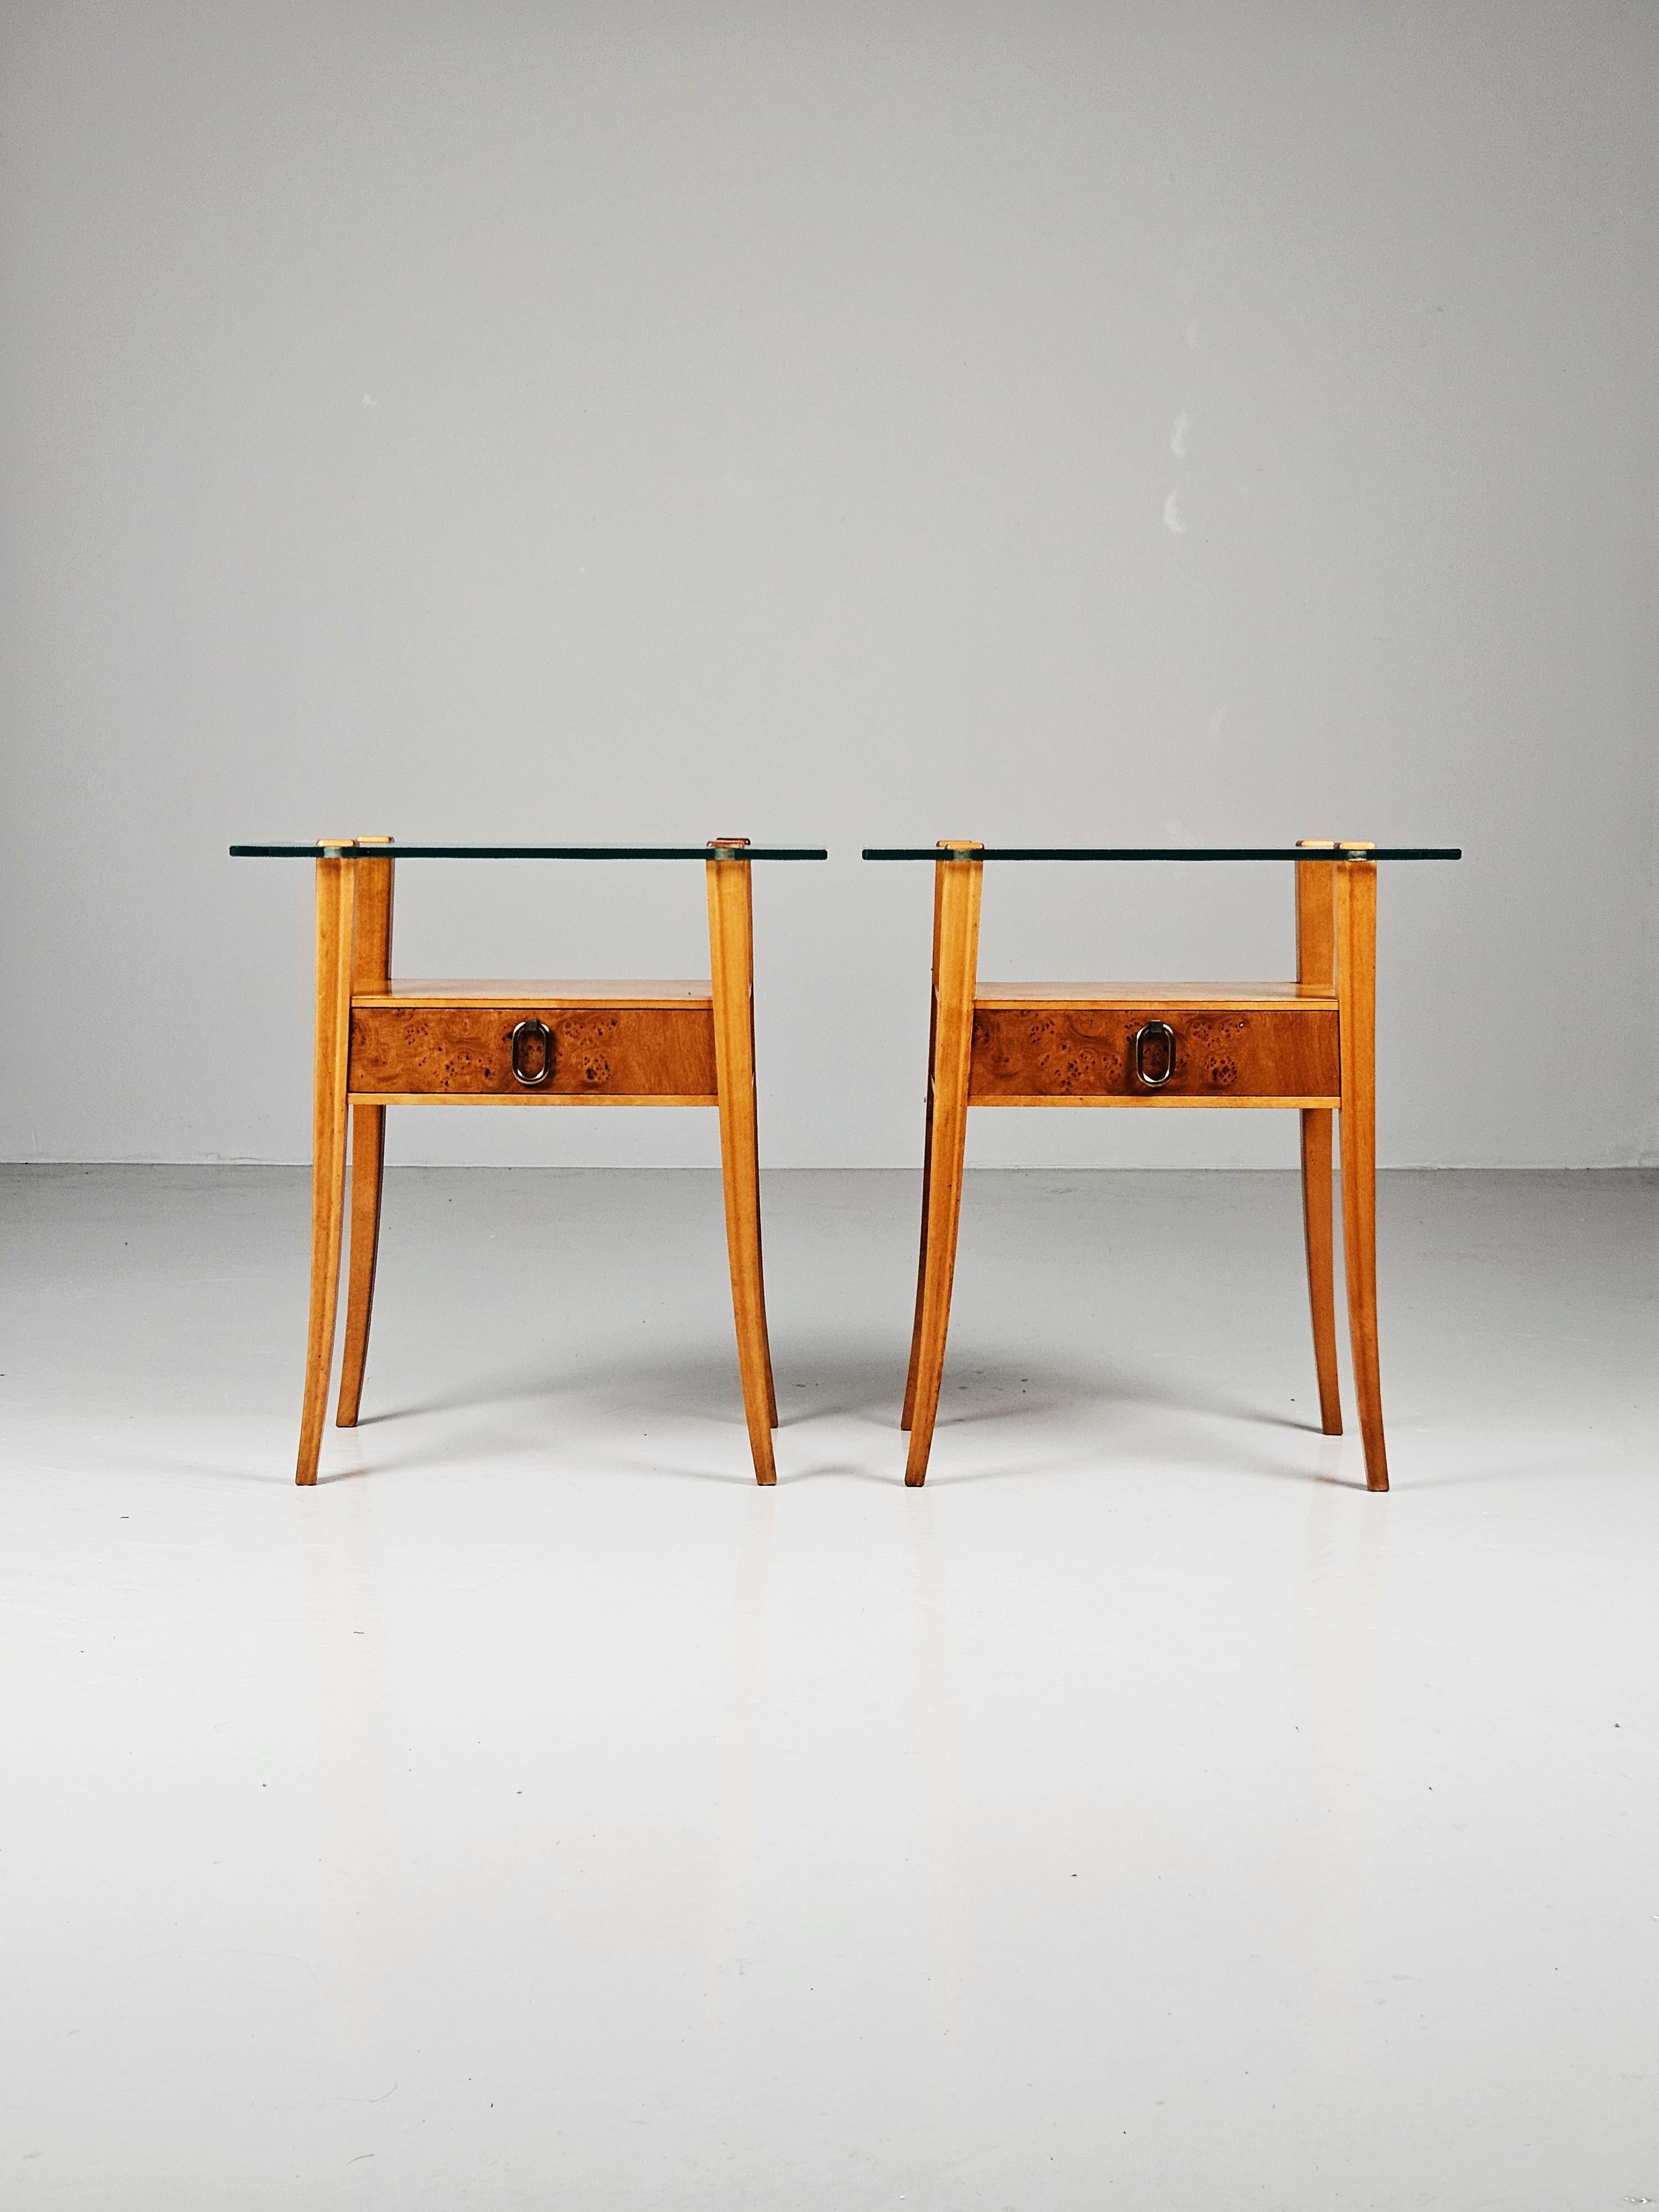 Magnifique paire de tables de chevet produite par Svenska Möbelfabrikerna Bodafors, Suède, au cours des années 1950. 

Fabriqué en bouleau avec un placage de racines sur les tiroirs et une poignée en laiton. Magnifique plateau en verre. 

Design